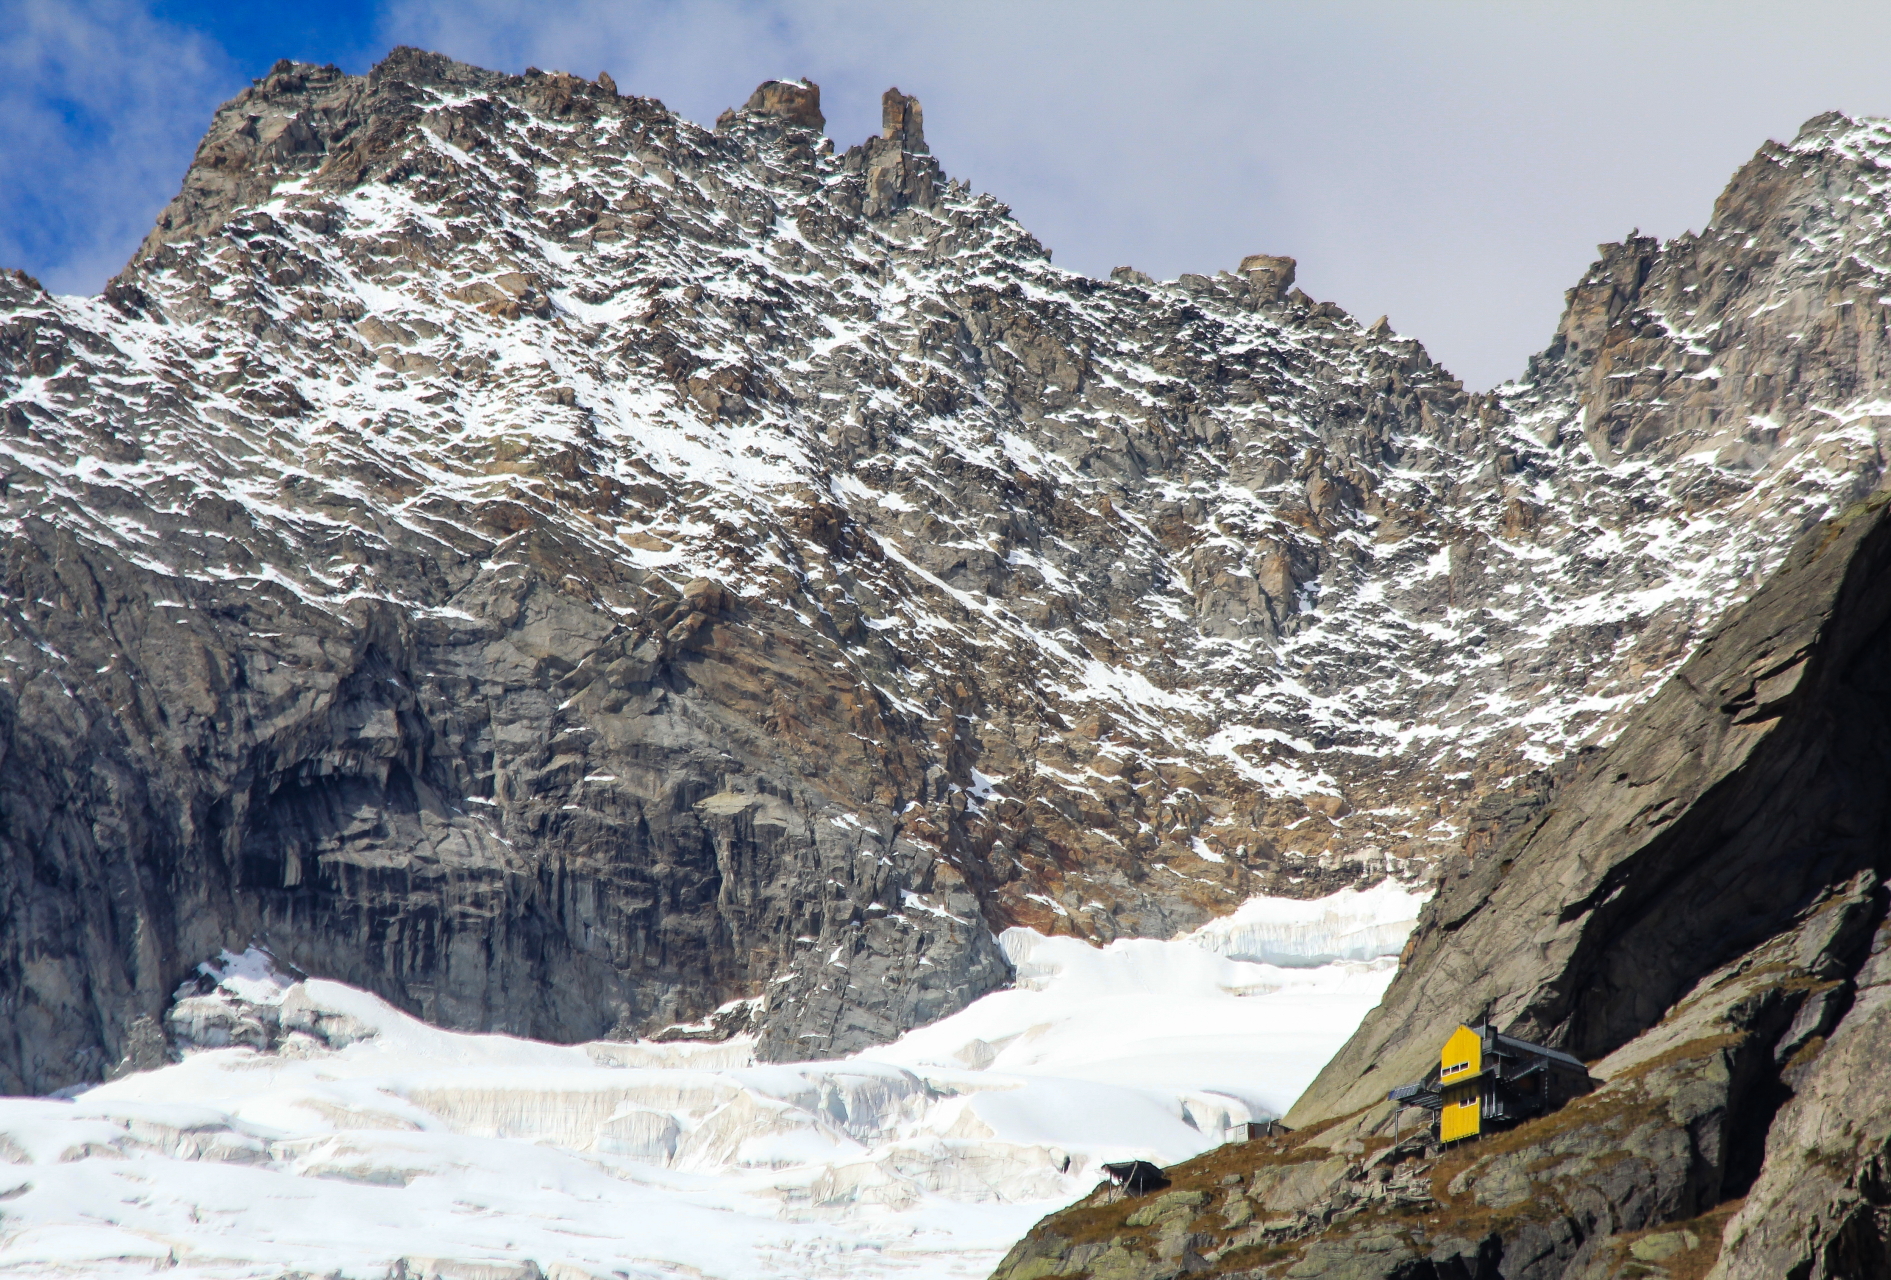 Sospeso tra ghiaccio e roccia, il rifugio Dalmazzi in Val Ferret modernità nella tradizione della montagna